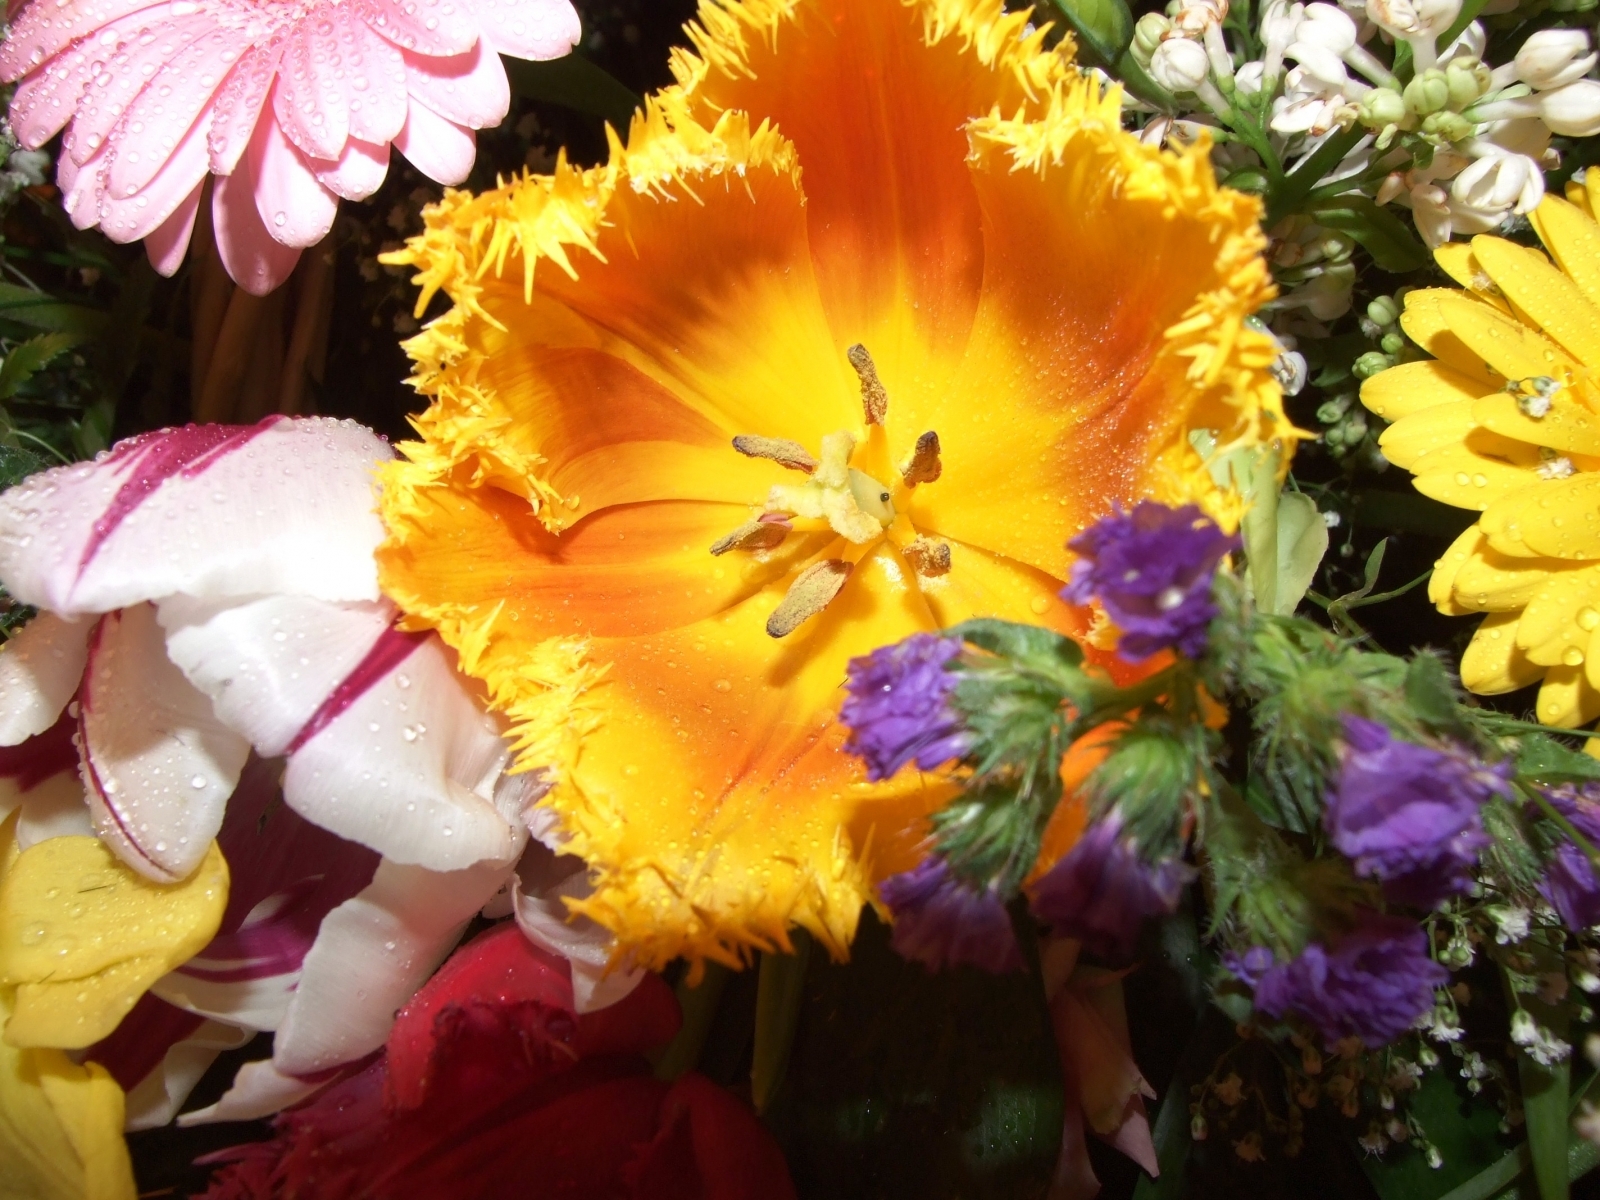 Скачать обои бесплатно Цветы, Растения картинка на рабочий стол ПК